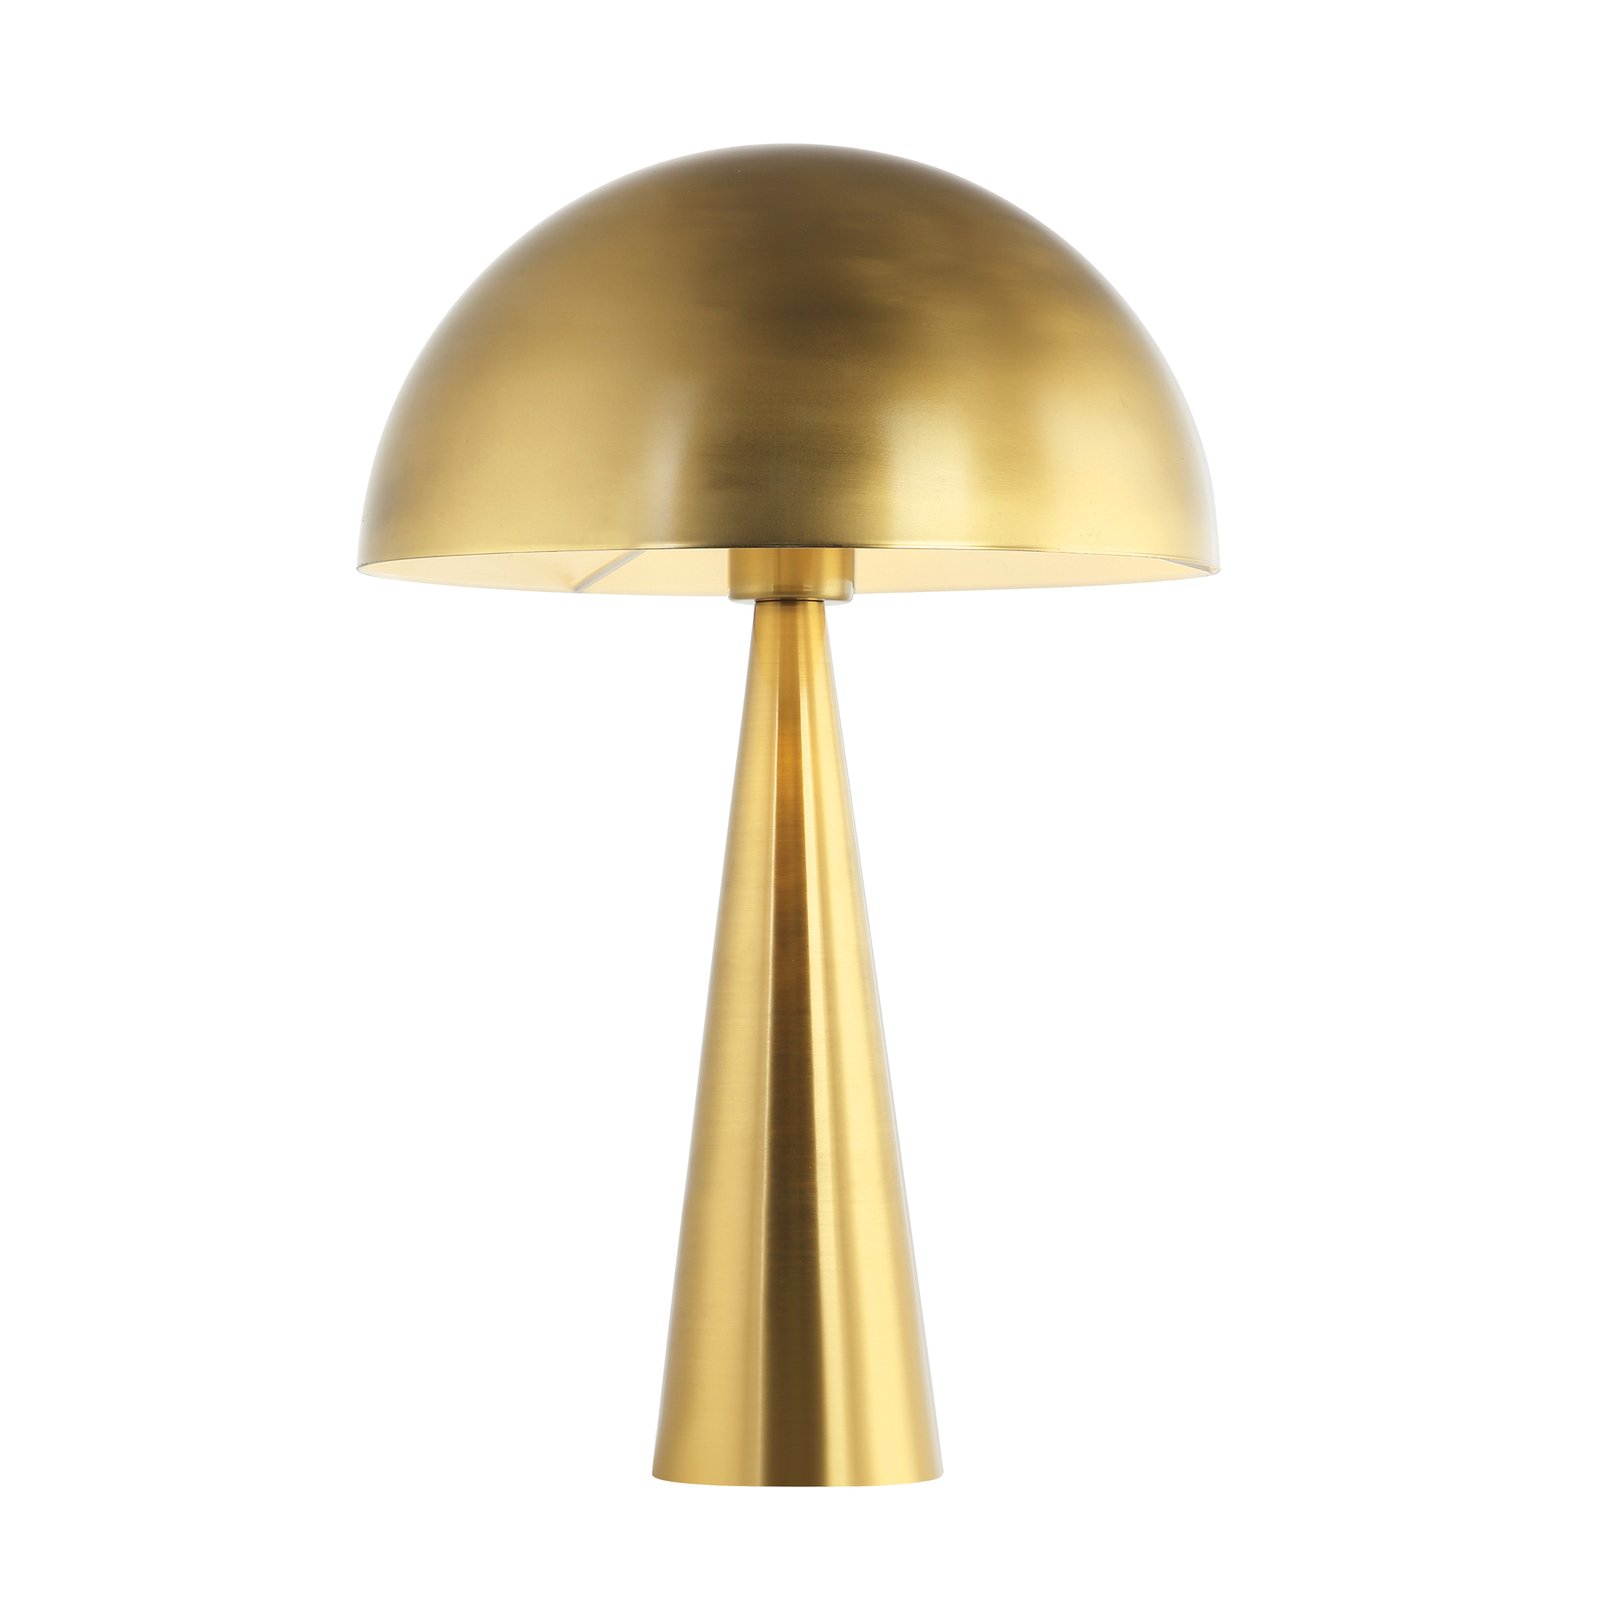 Bordlampe 20211 metall, høyde 47 cm, matt gull